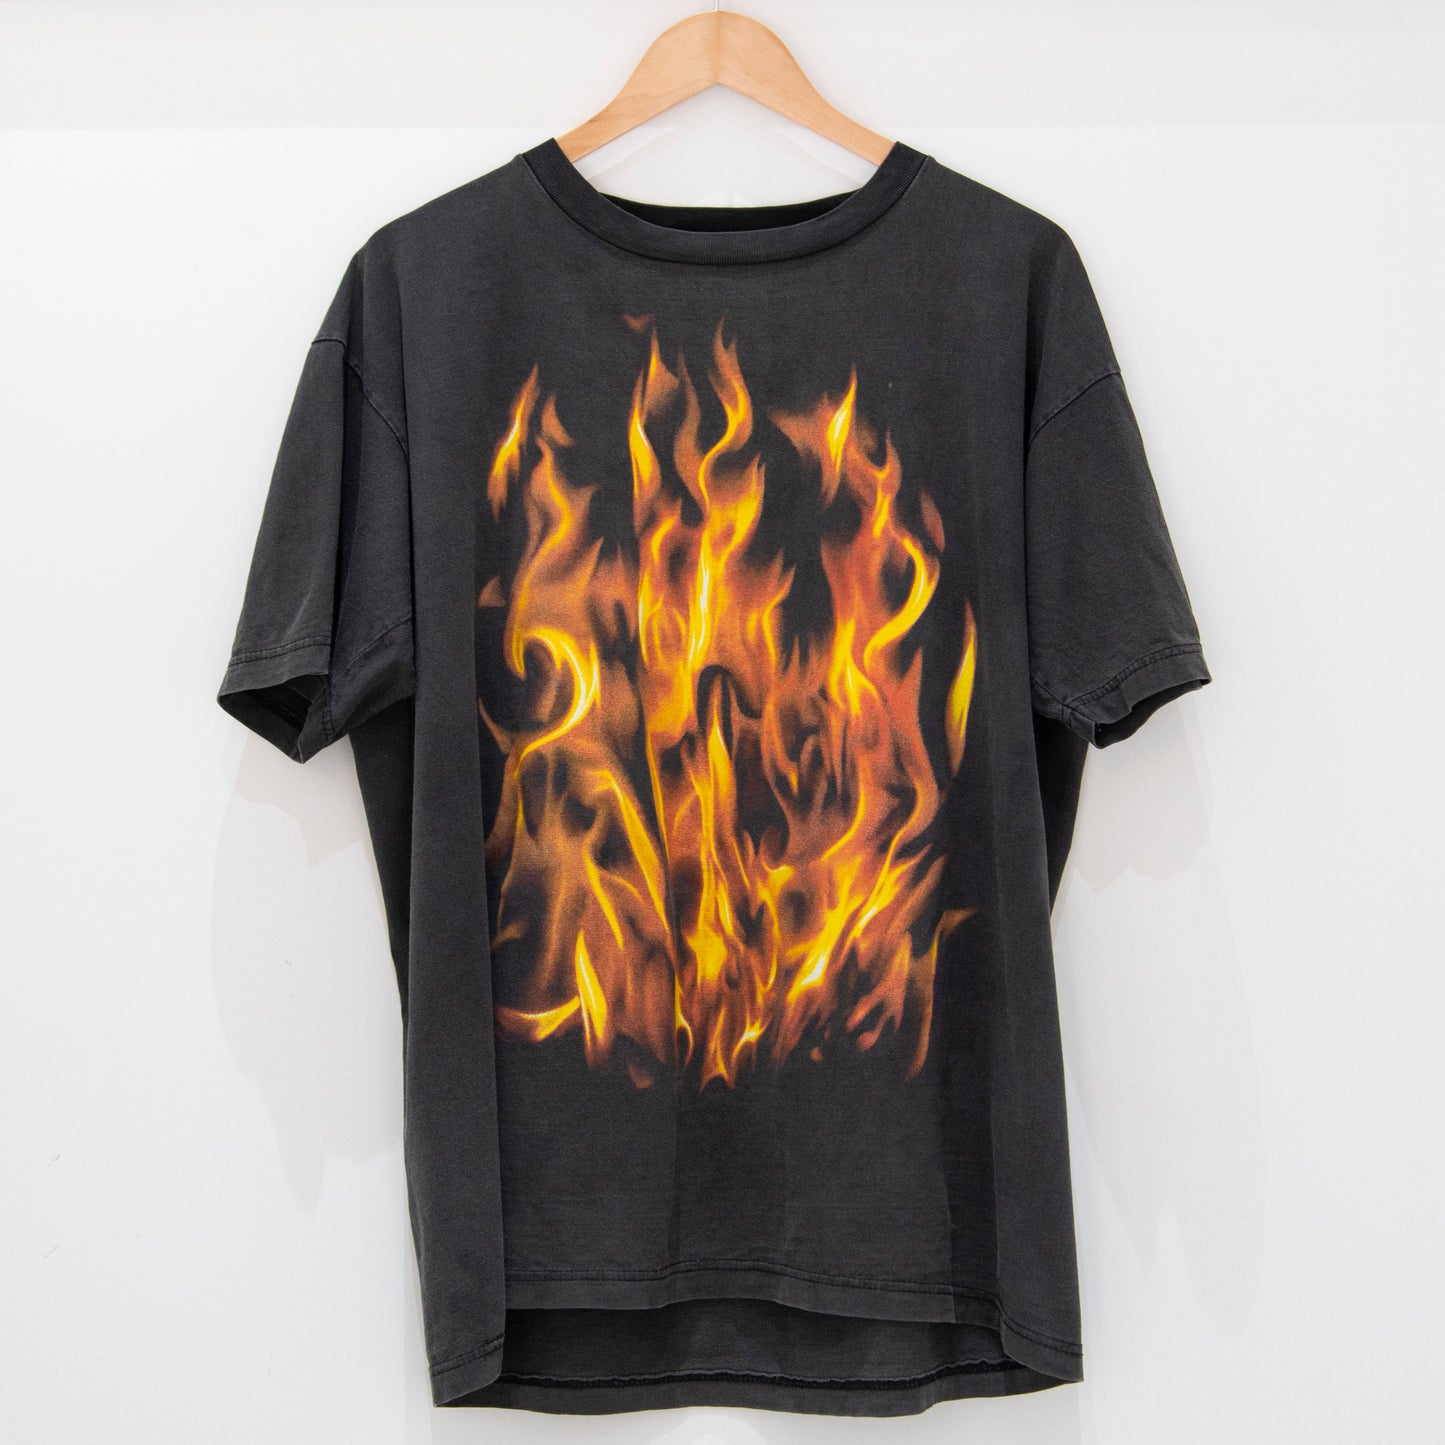 Vintage Fire / Flames T-Shirt XL